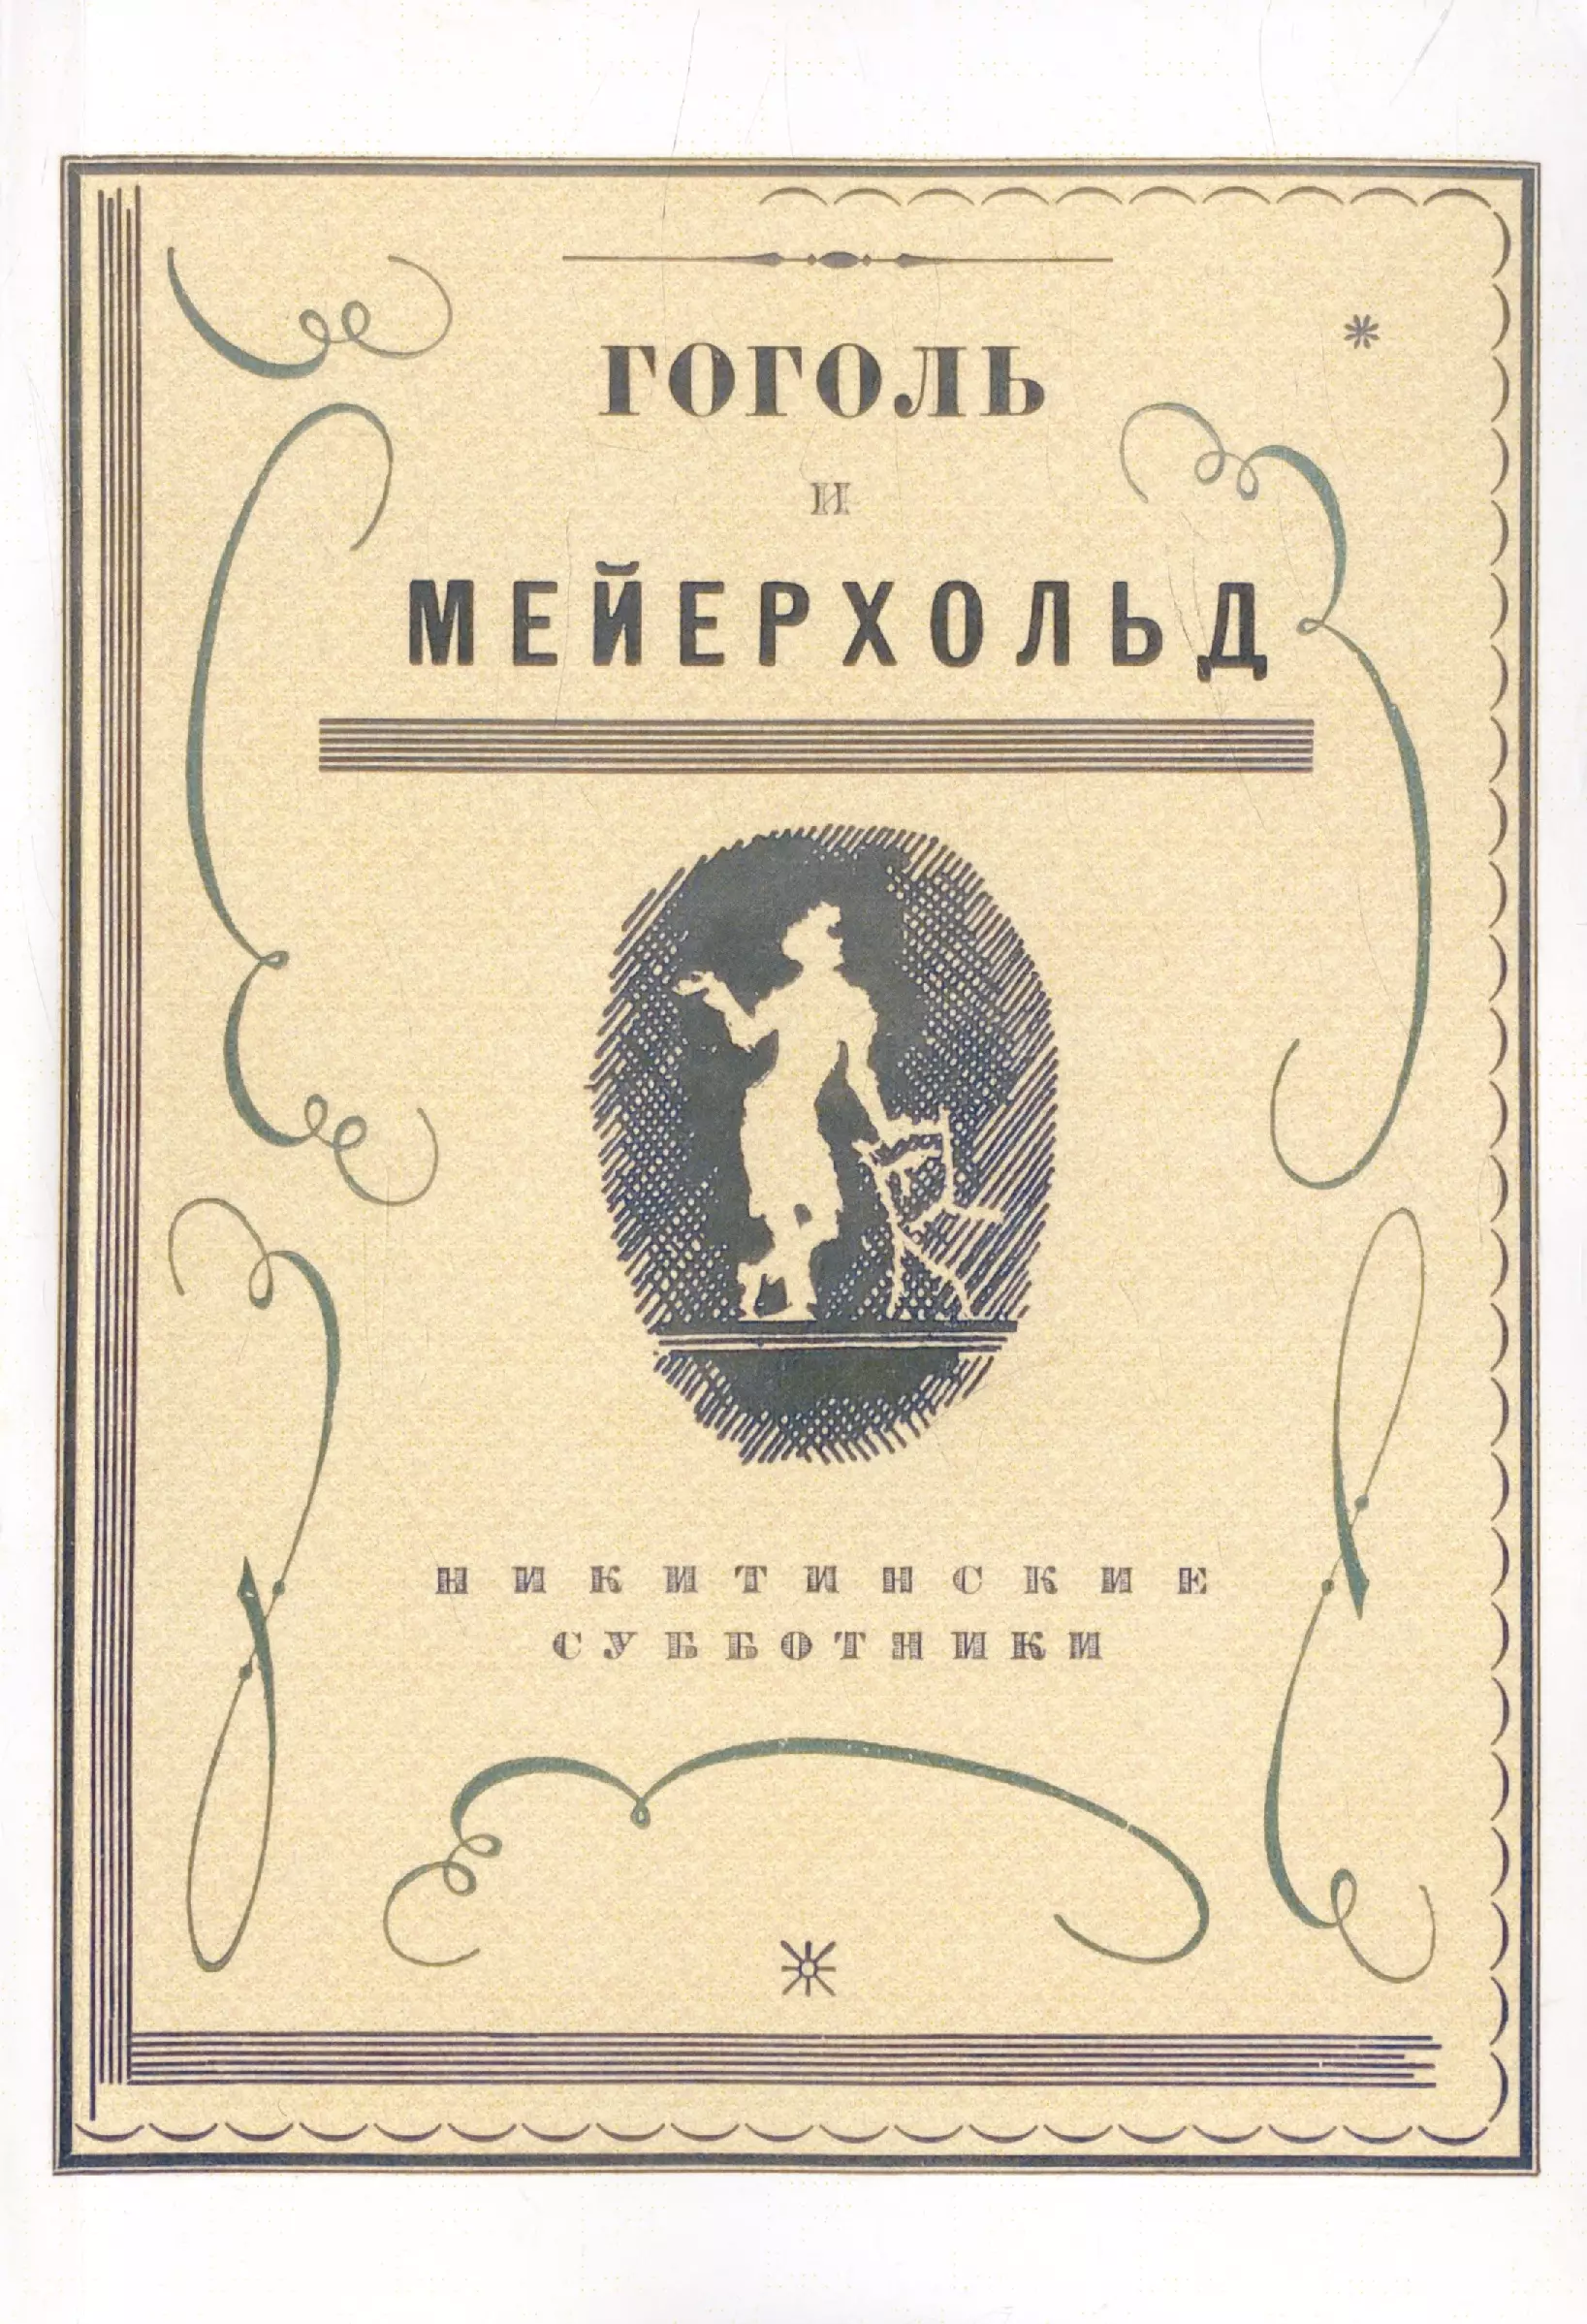 Гоголь и Мейерхольд: сборник (Репринтное издание) пюжоль э карточный игрок на все руки репринтное издание